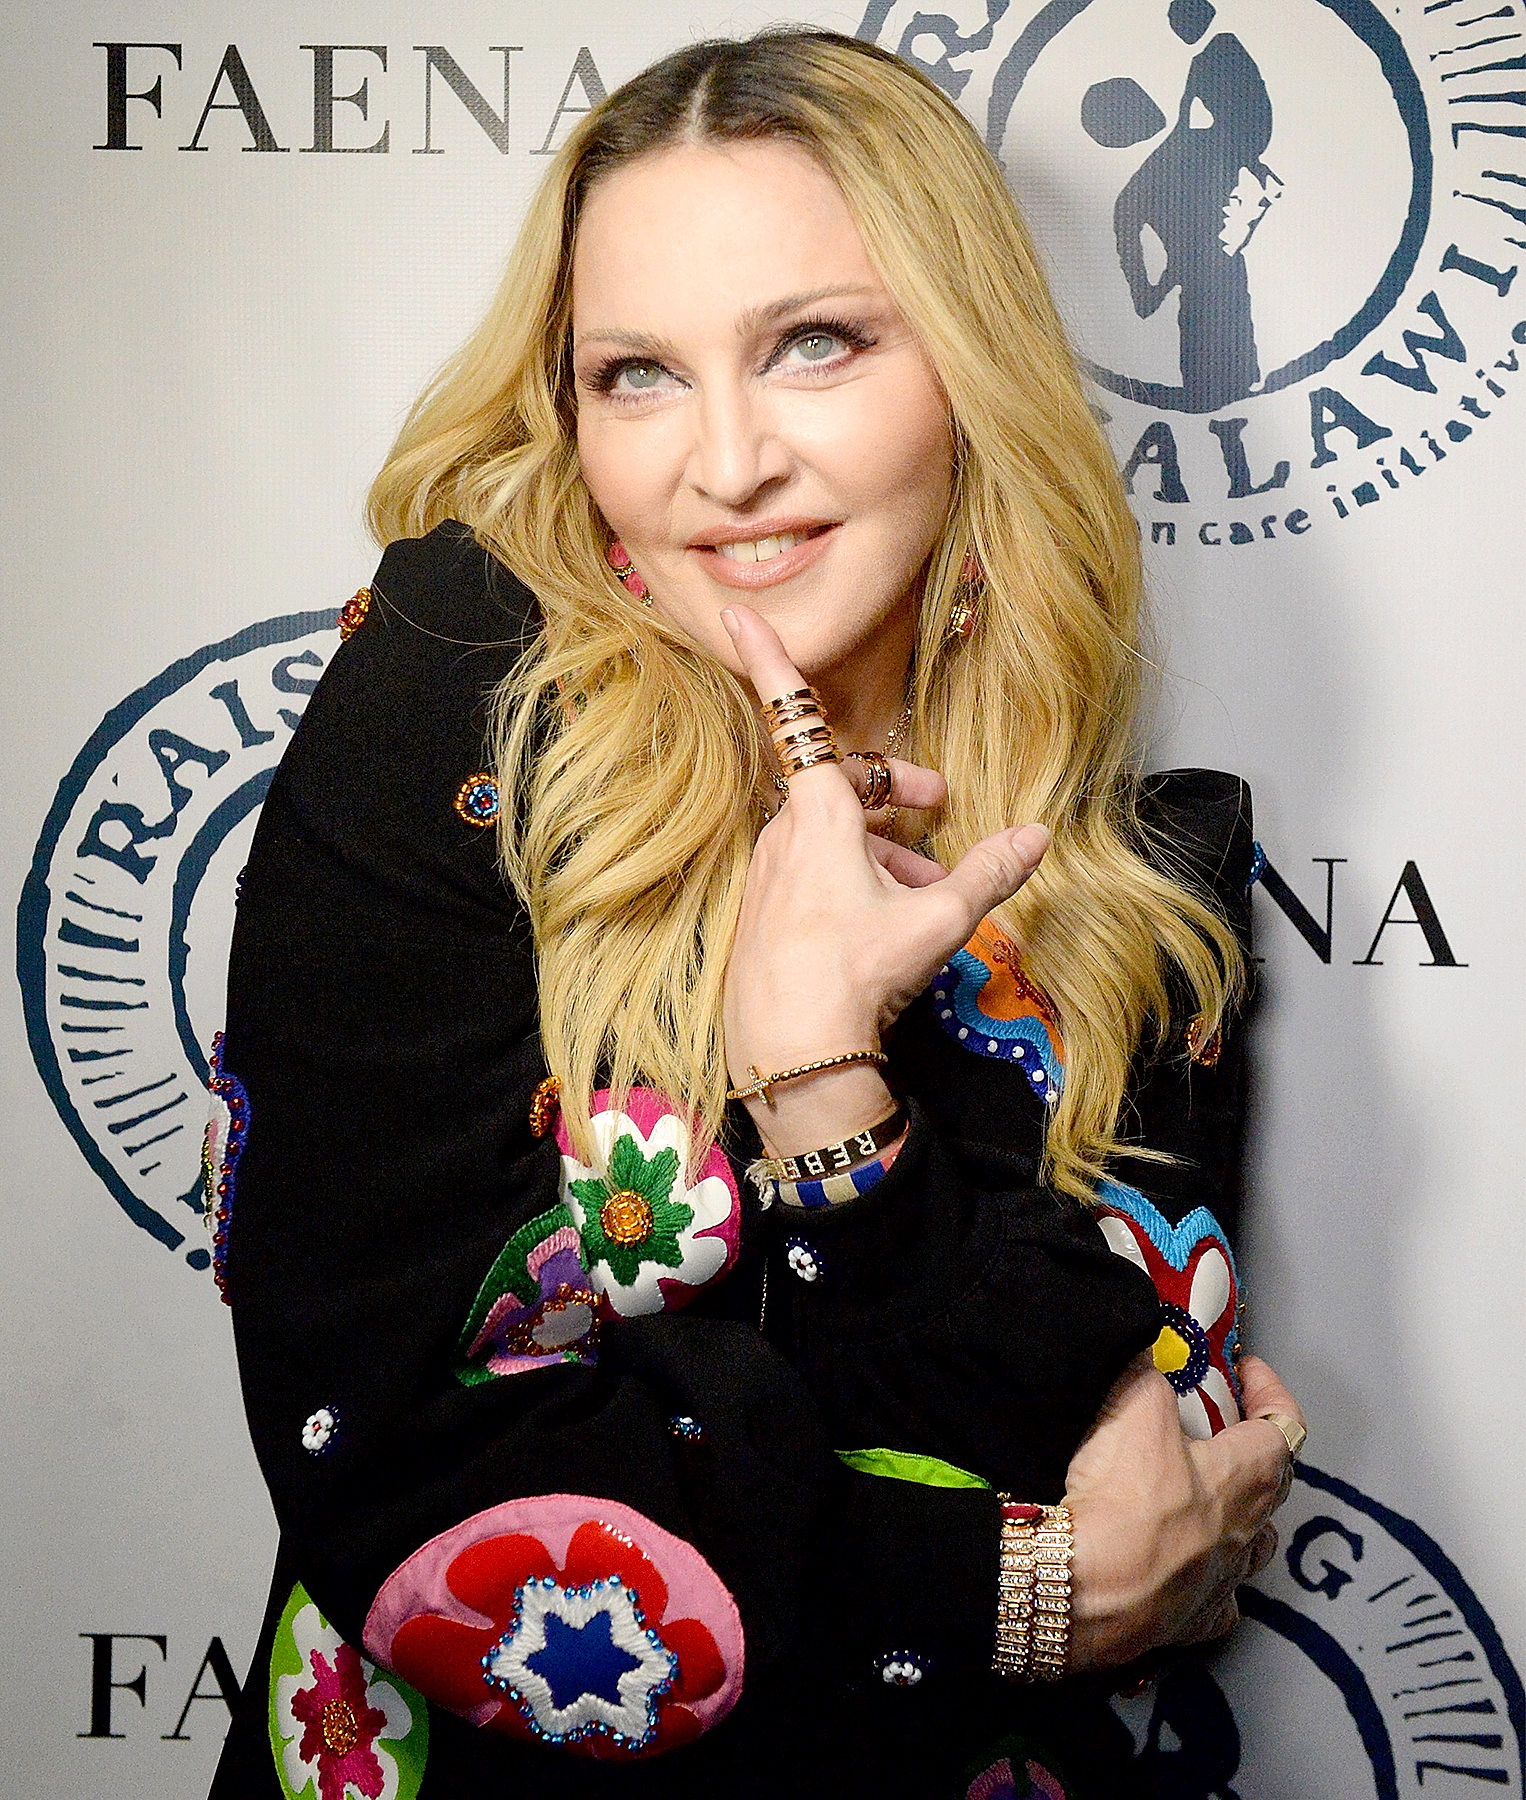 Madonna for Louis Vuitton UNRETOUCHED (5 pics)